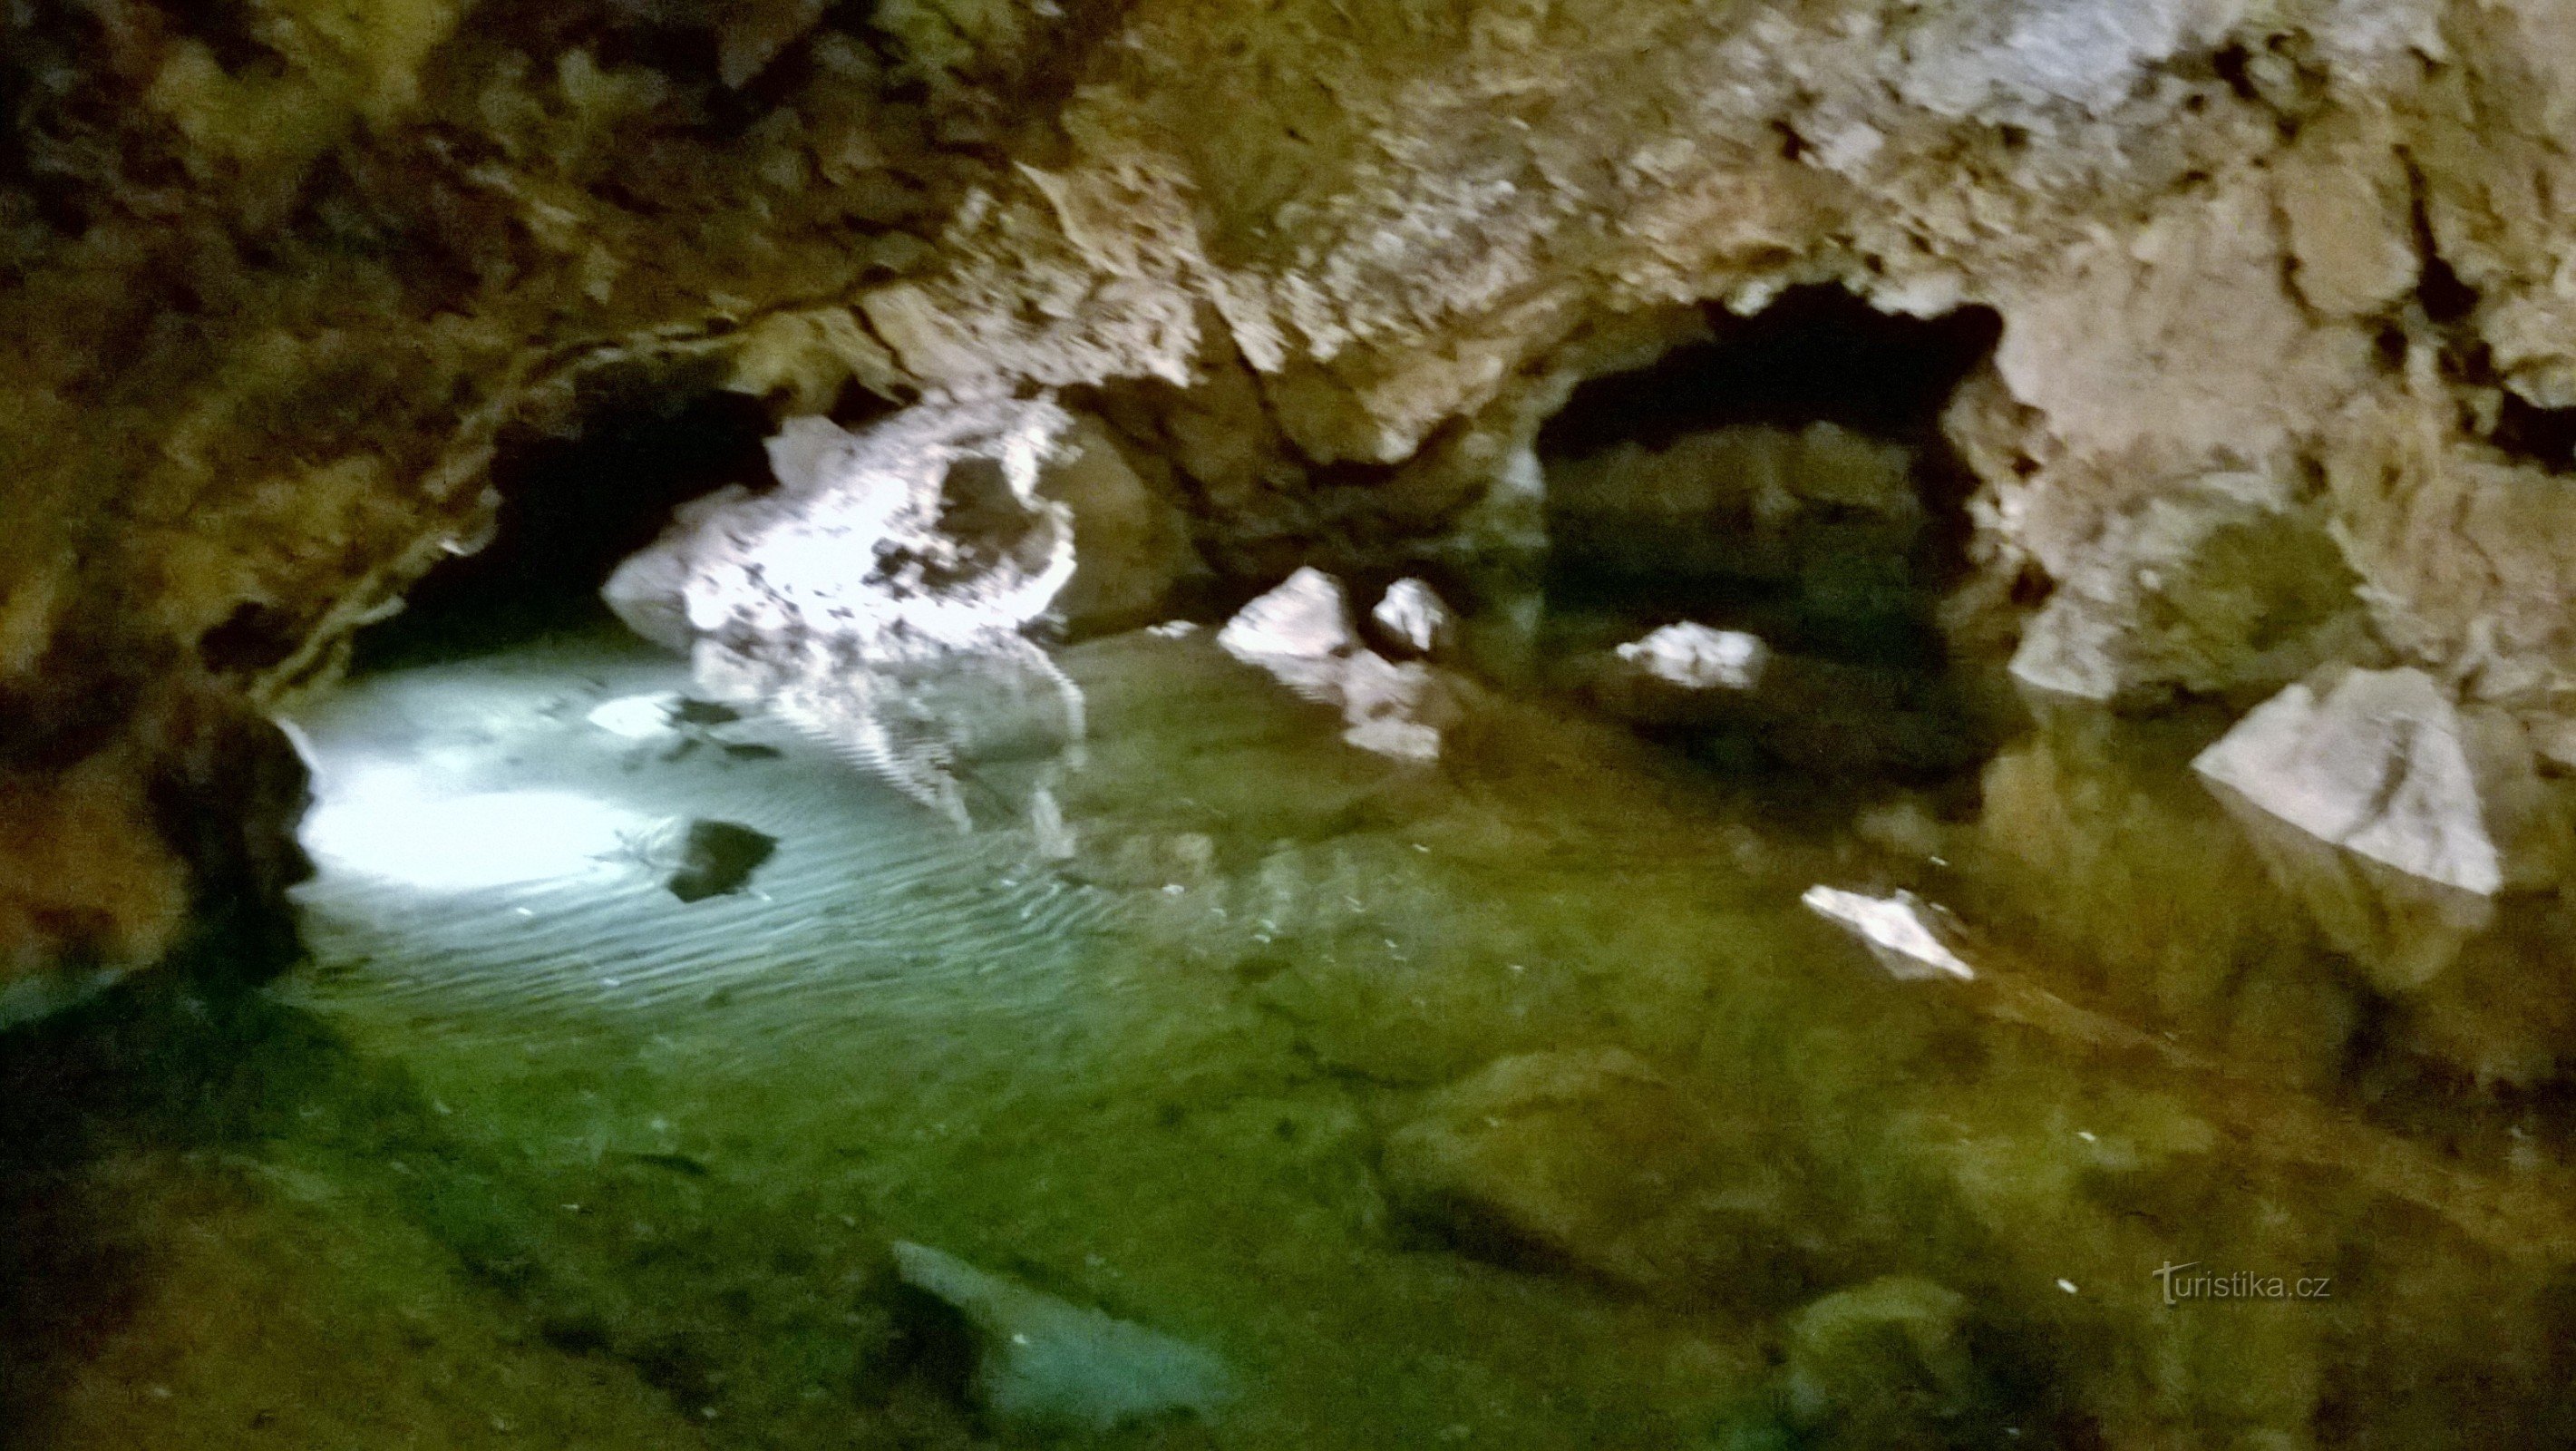 sø - Bozkovské huler